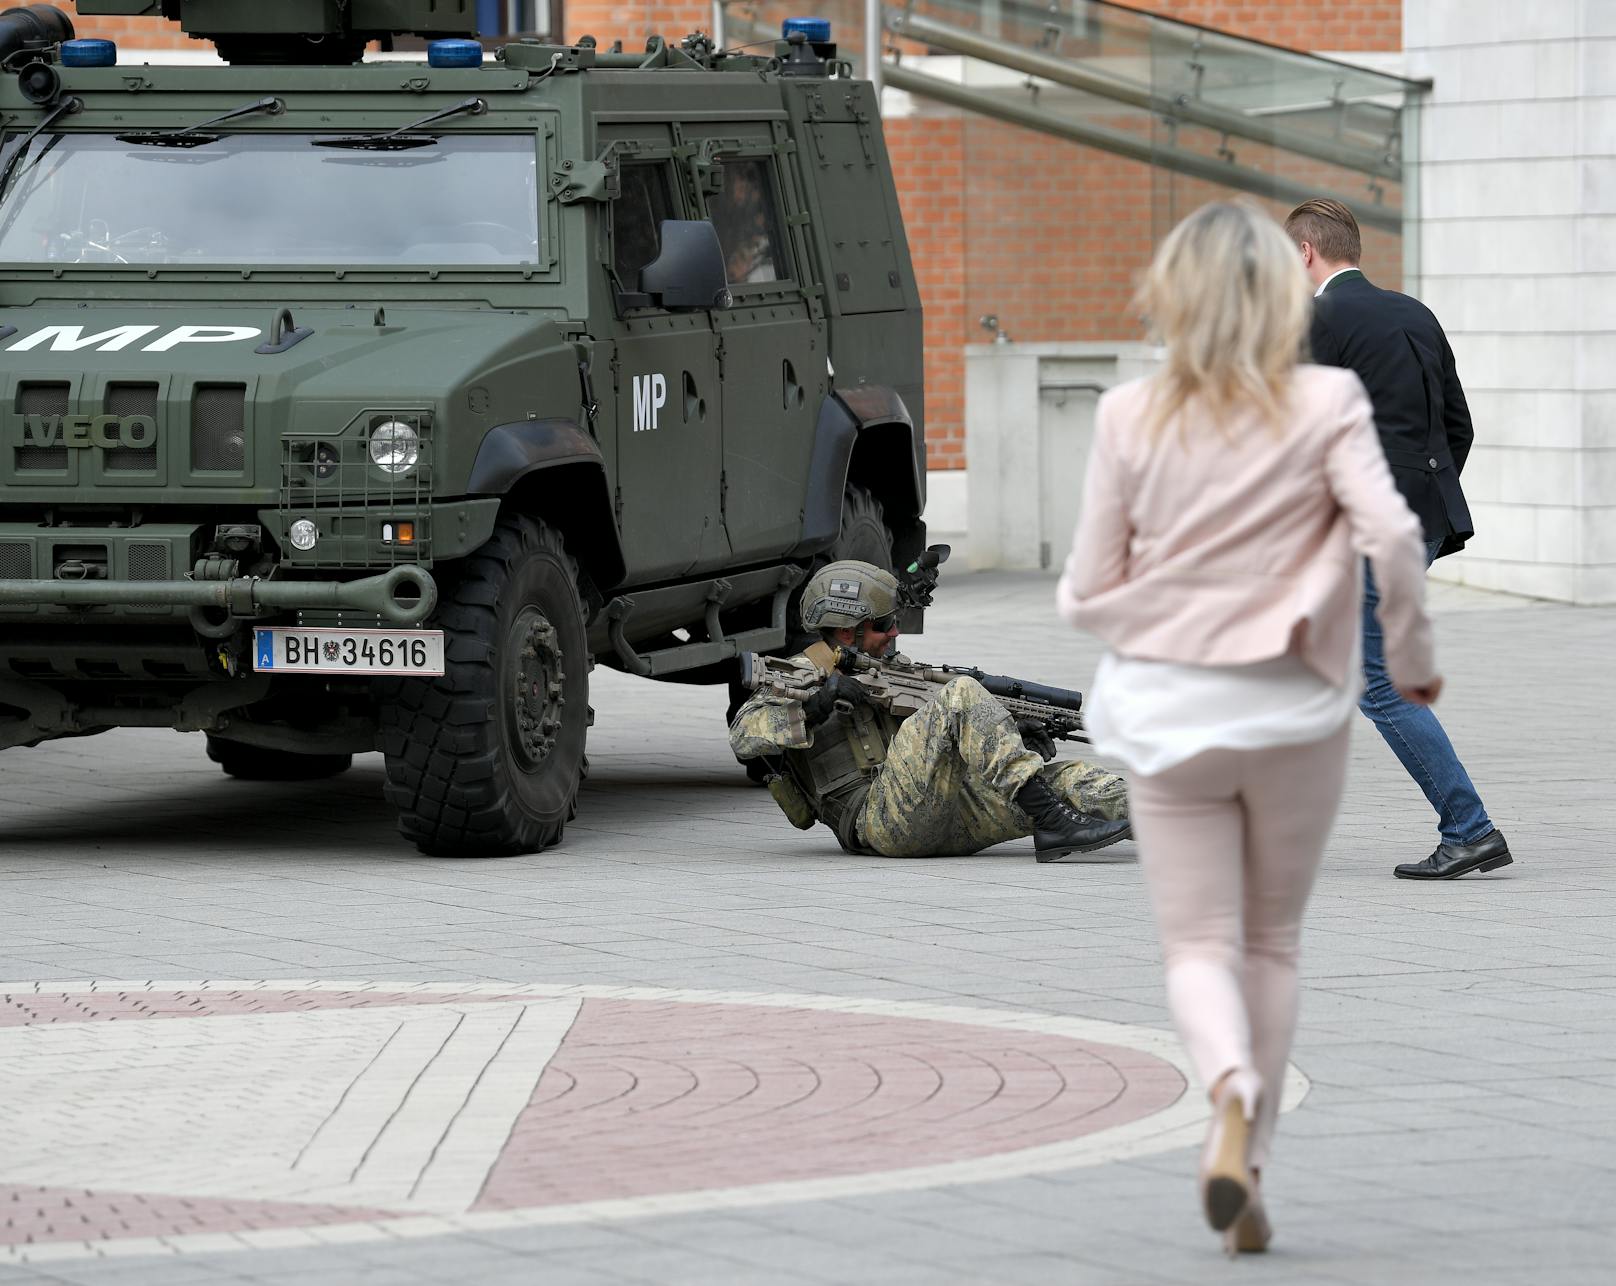 Plötzlich kollabierte einer der Bundesheer-Soldaten vor laufender Kamera. Verteidigungsministerin ...